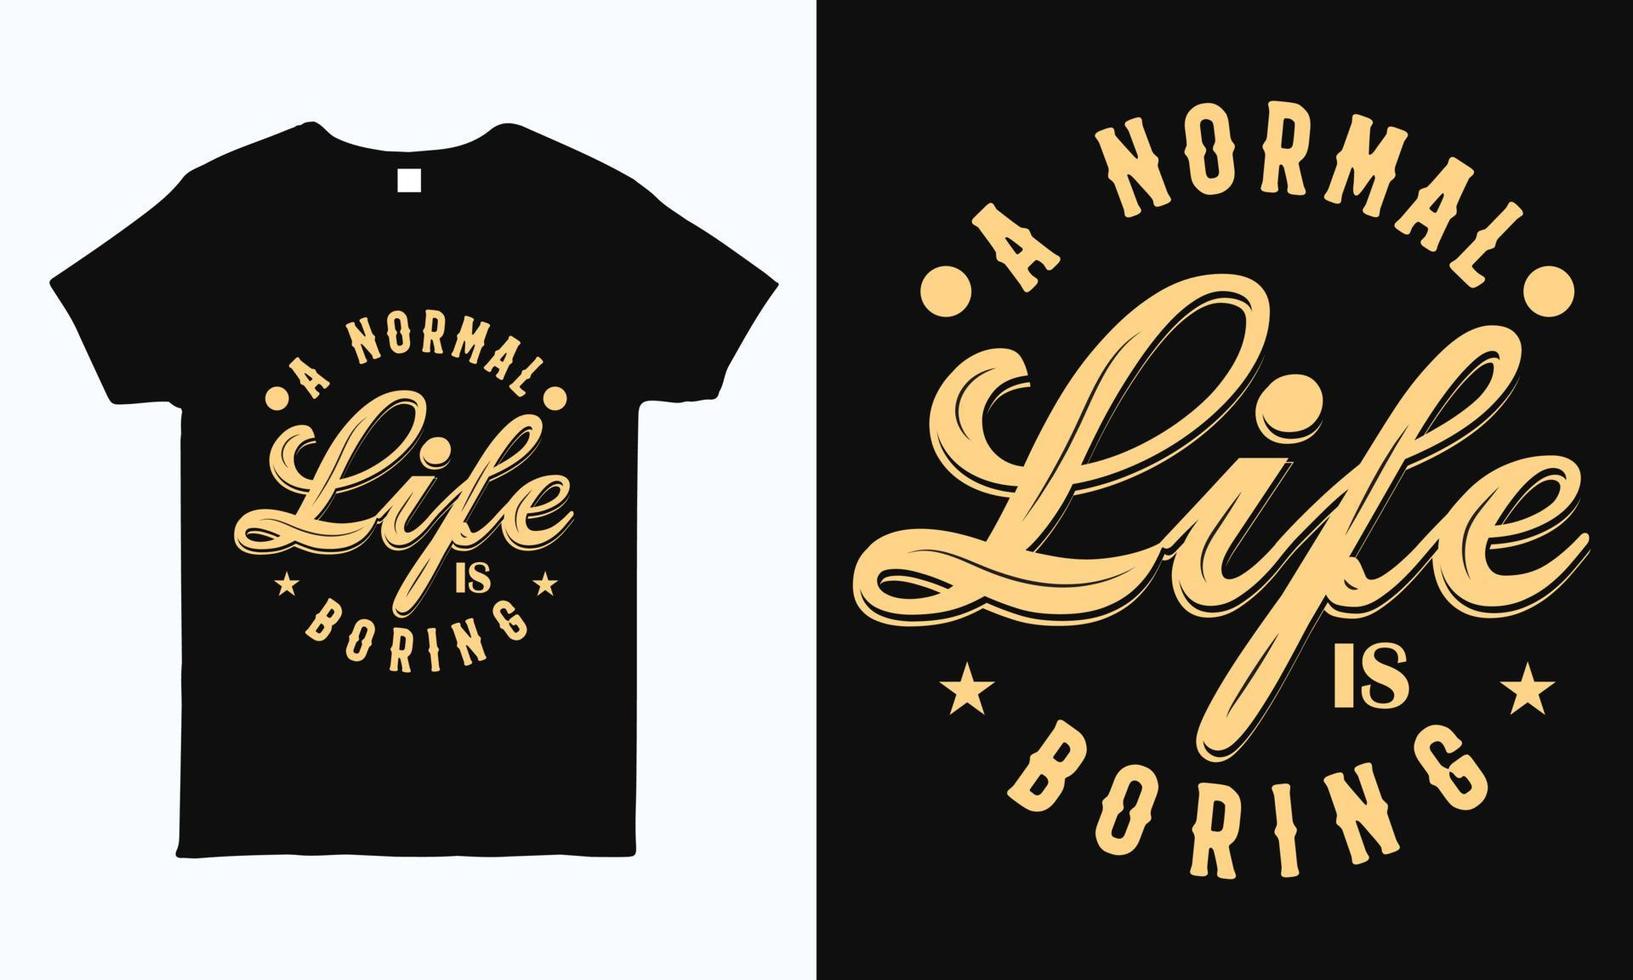 ett normalt liv är tråkigt. motiverande, inspirerande, positiv citattypografidesign för t-shirt, klistermärke, mugg, kudde och väskatryck. vektor